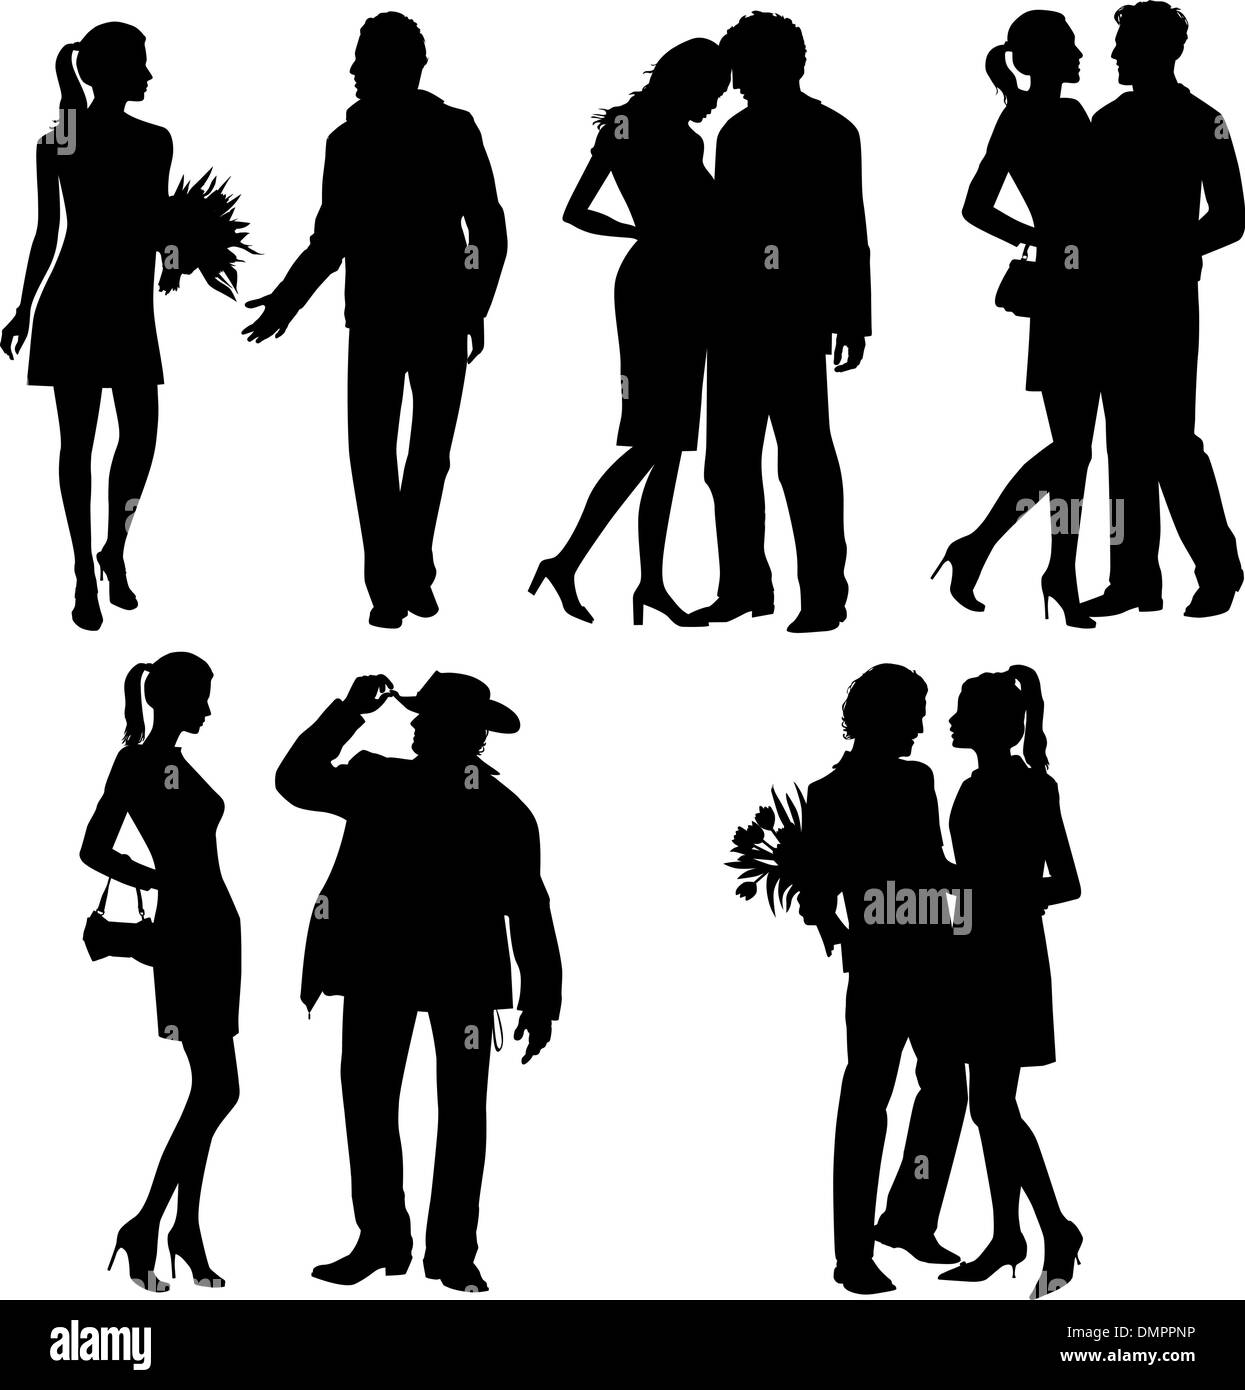 Beaucoup de gens - couple romance, silhouette, vector set Illustration de Vecteur